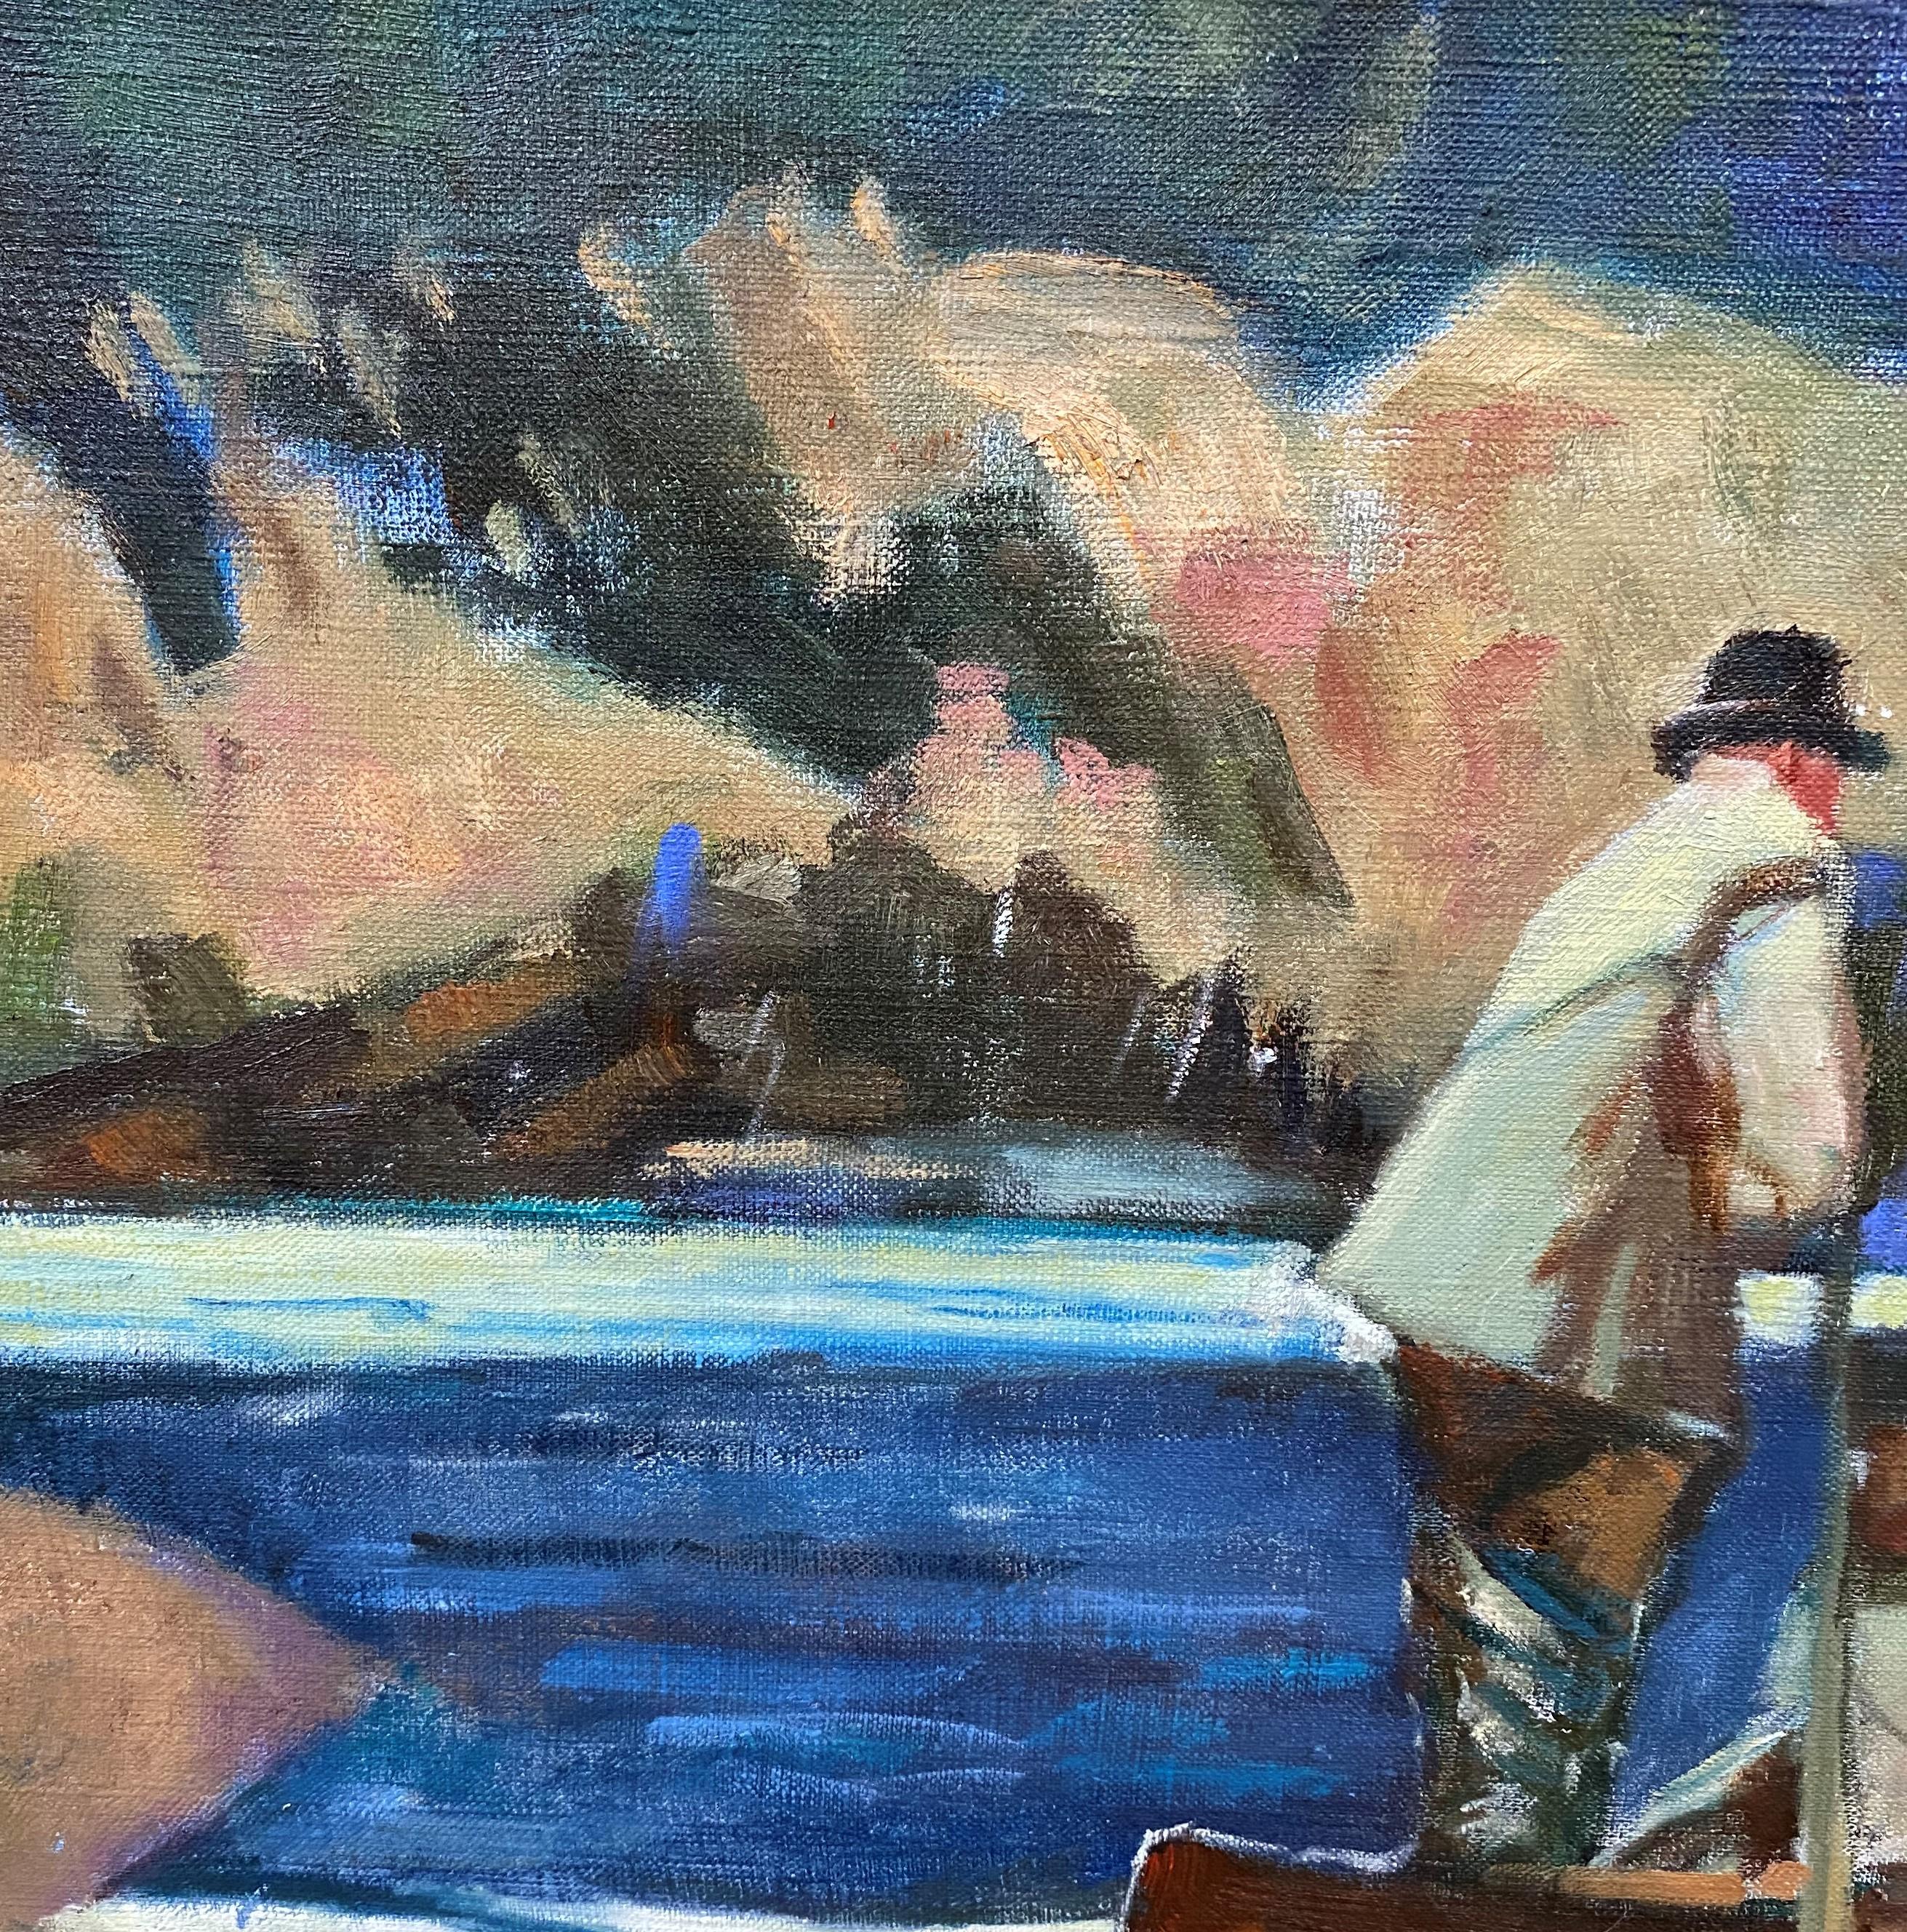 Une belle peinture impressionniste sportive représentant un pêcheur de saumon dans un canoë par l'artiste américain John Whorf (1903-1959). Whorf est né à Winthrop, dans le Massachusetts, et à l'âge de seize ans, il a commencé à étudier à